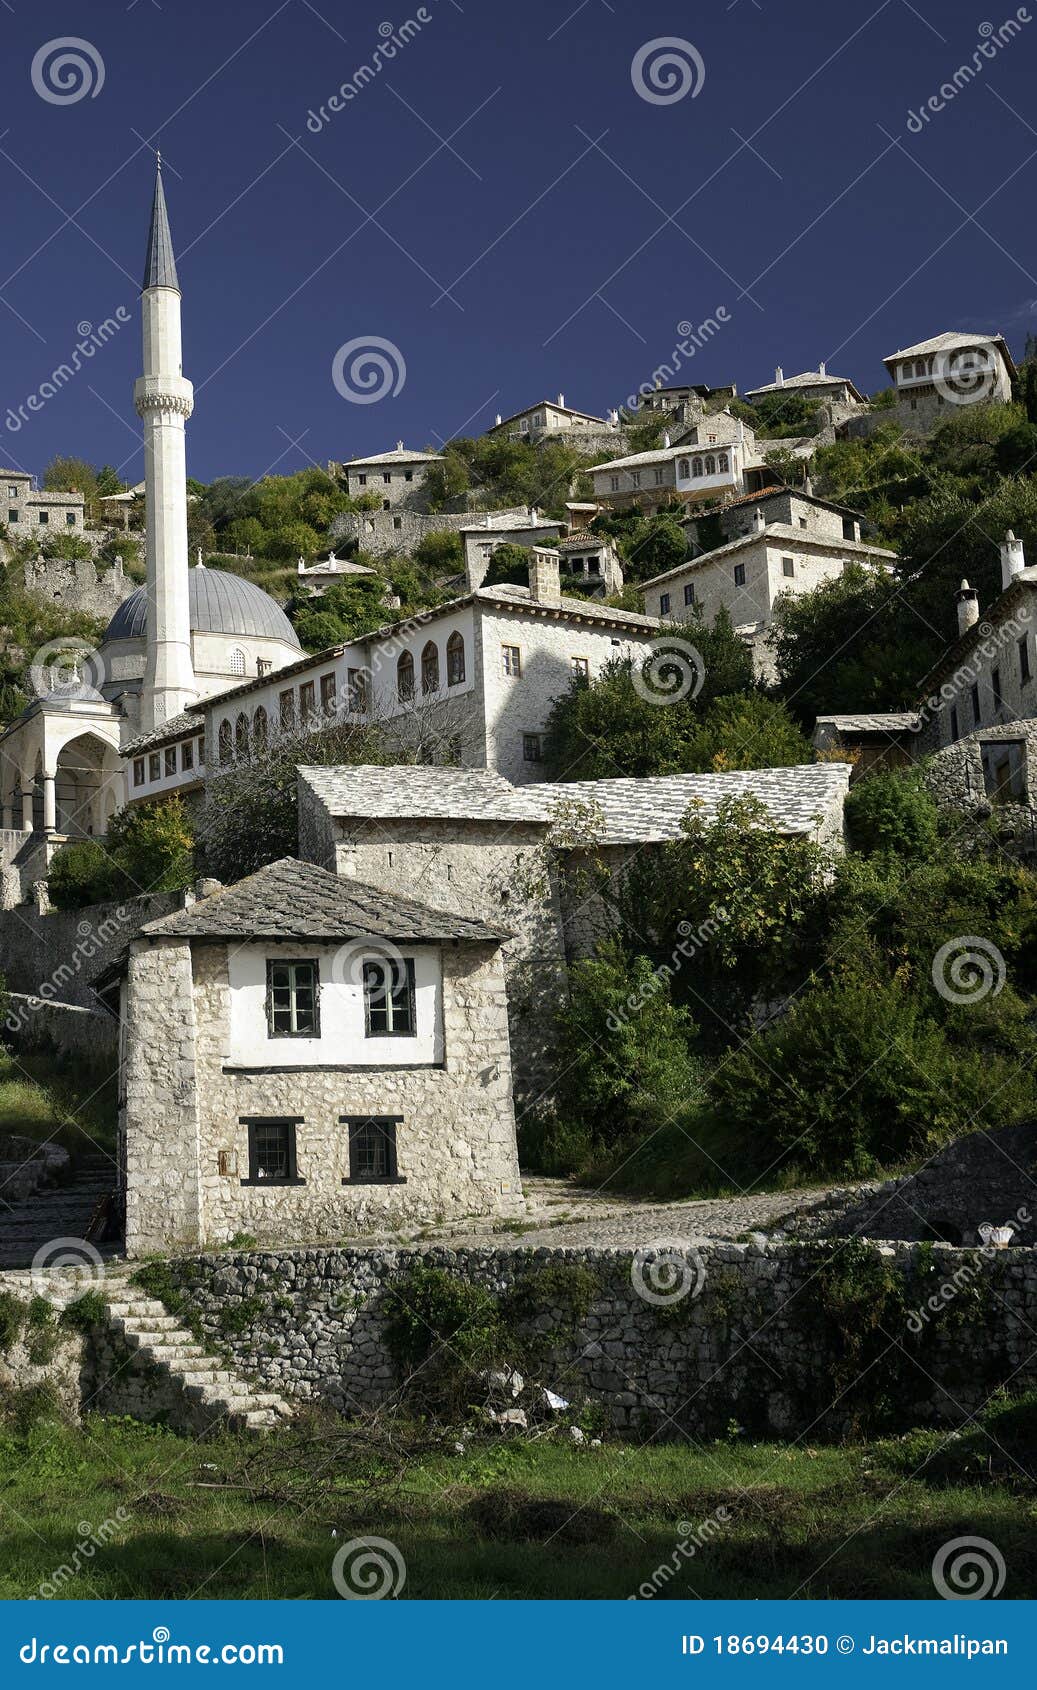 pocitelj village in bosnia herzegovina